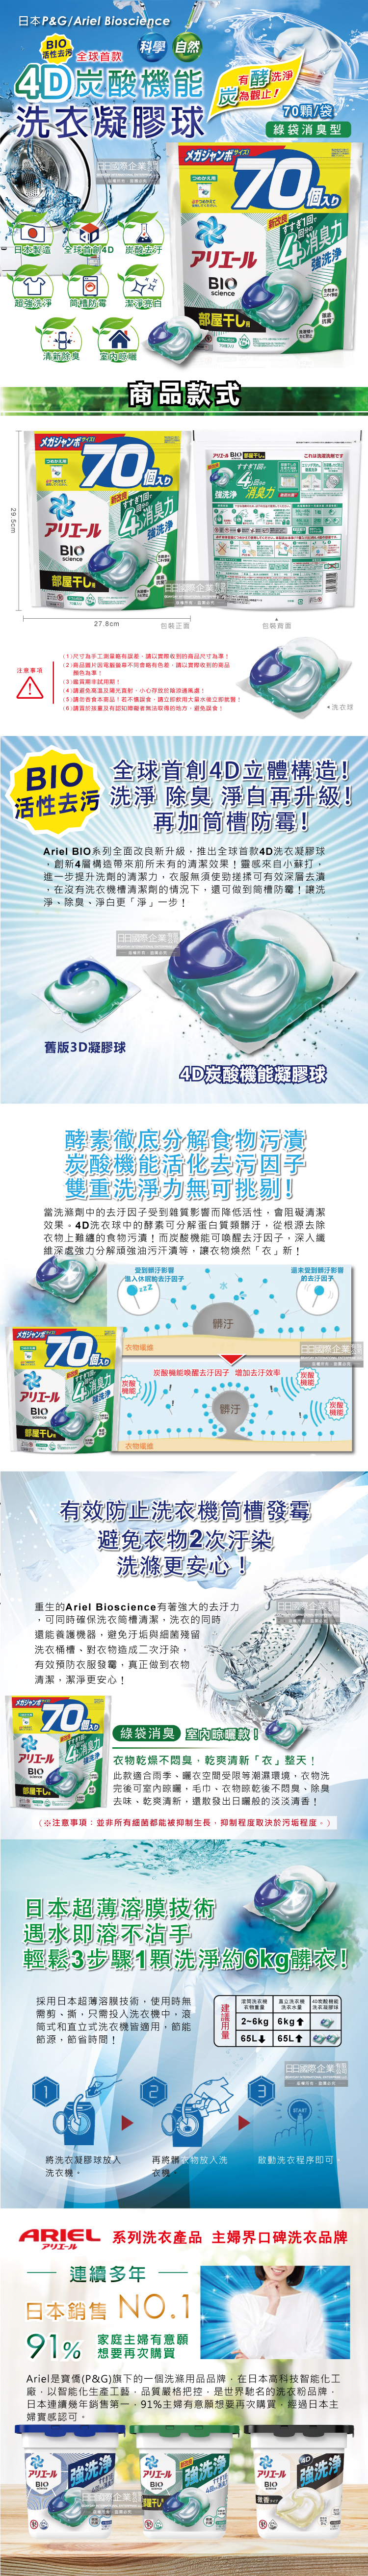 (清潔-衣物)日本PG-4D炭酸機能洗衣凝膠球(綠袋消臭)70顆袋裝(介紹圖)